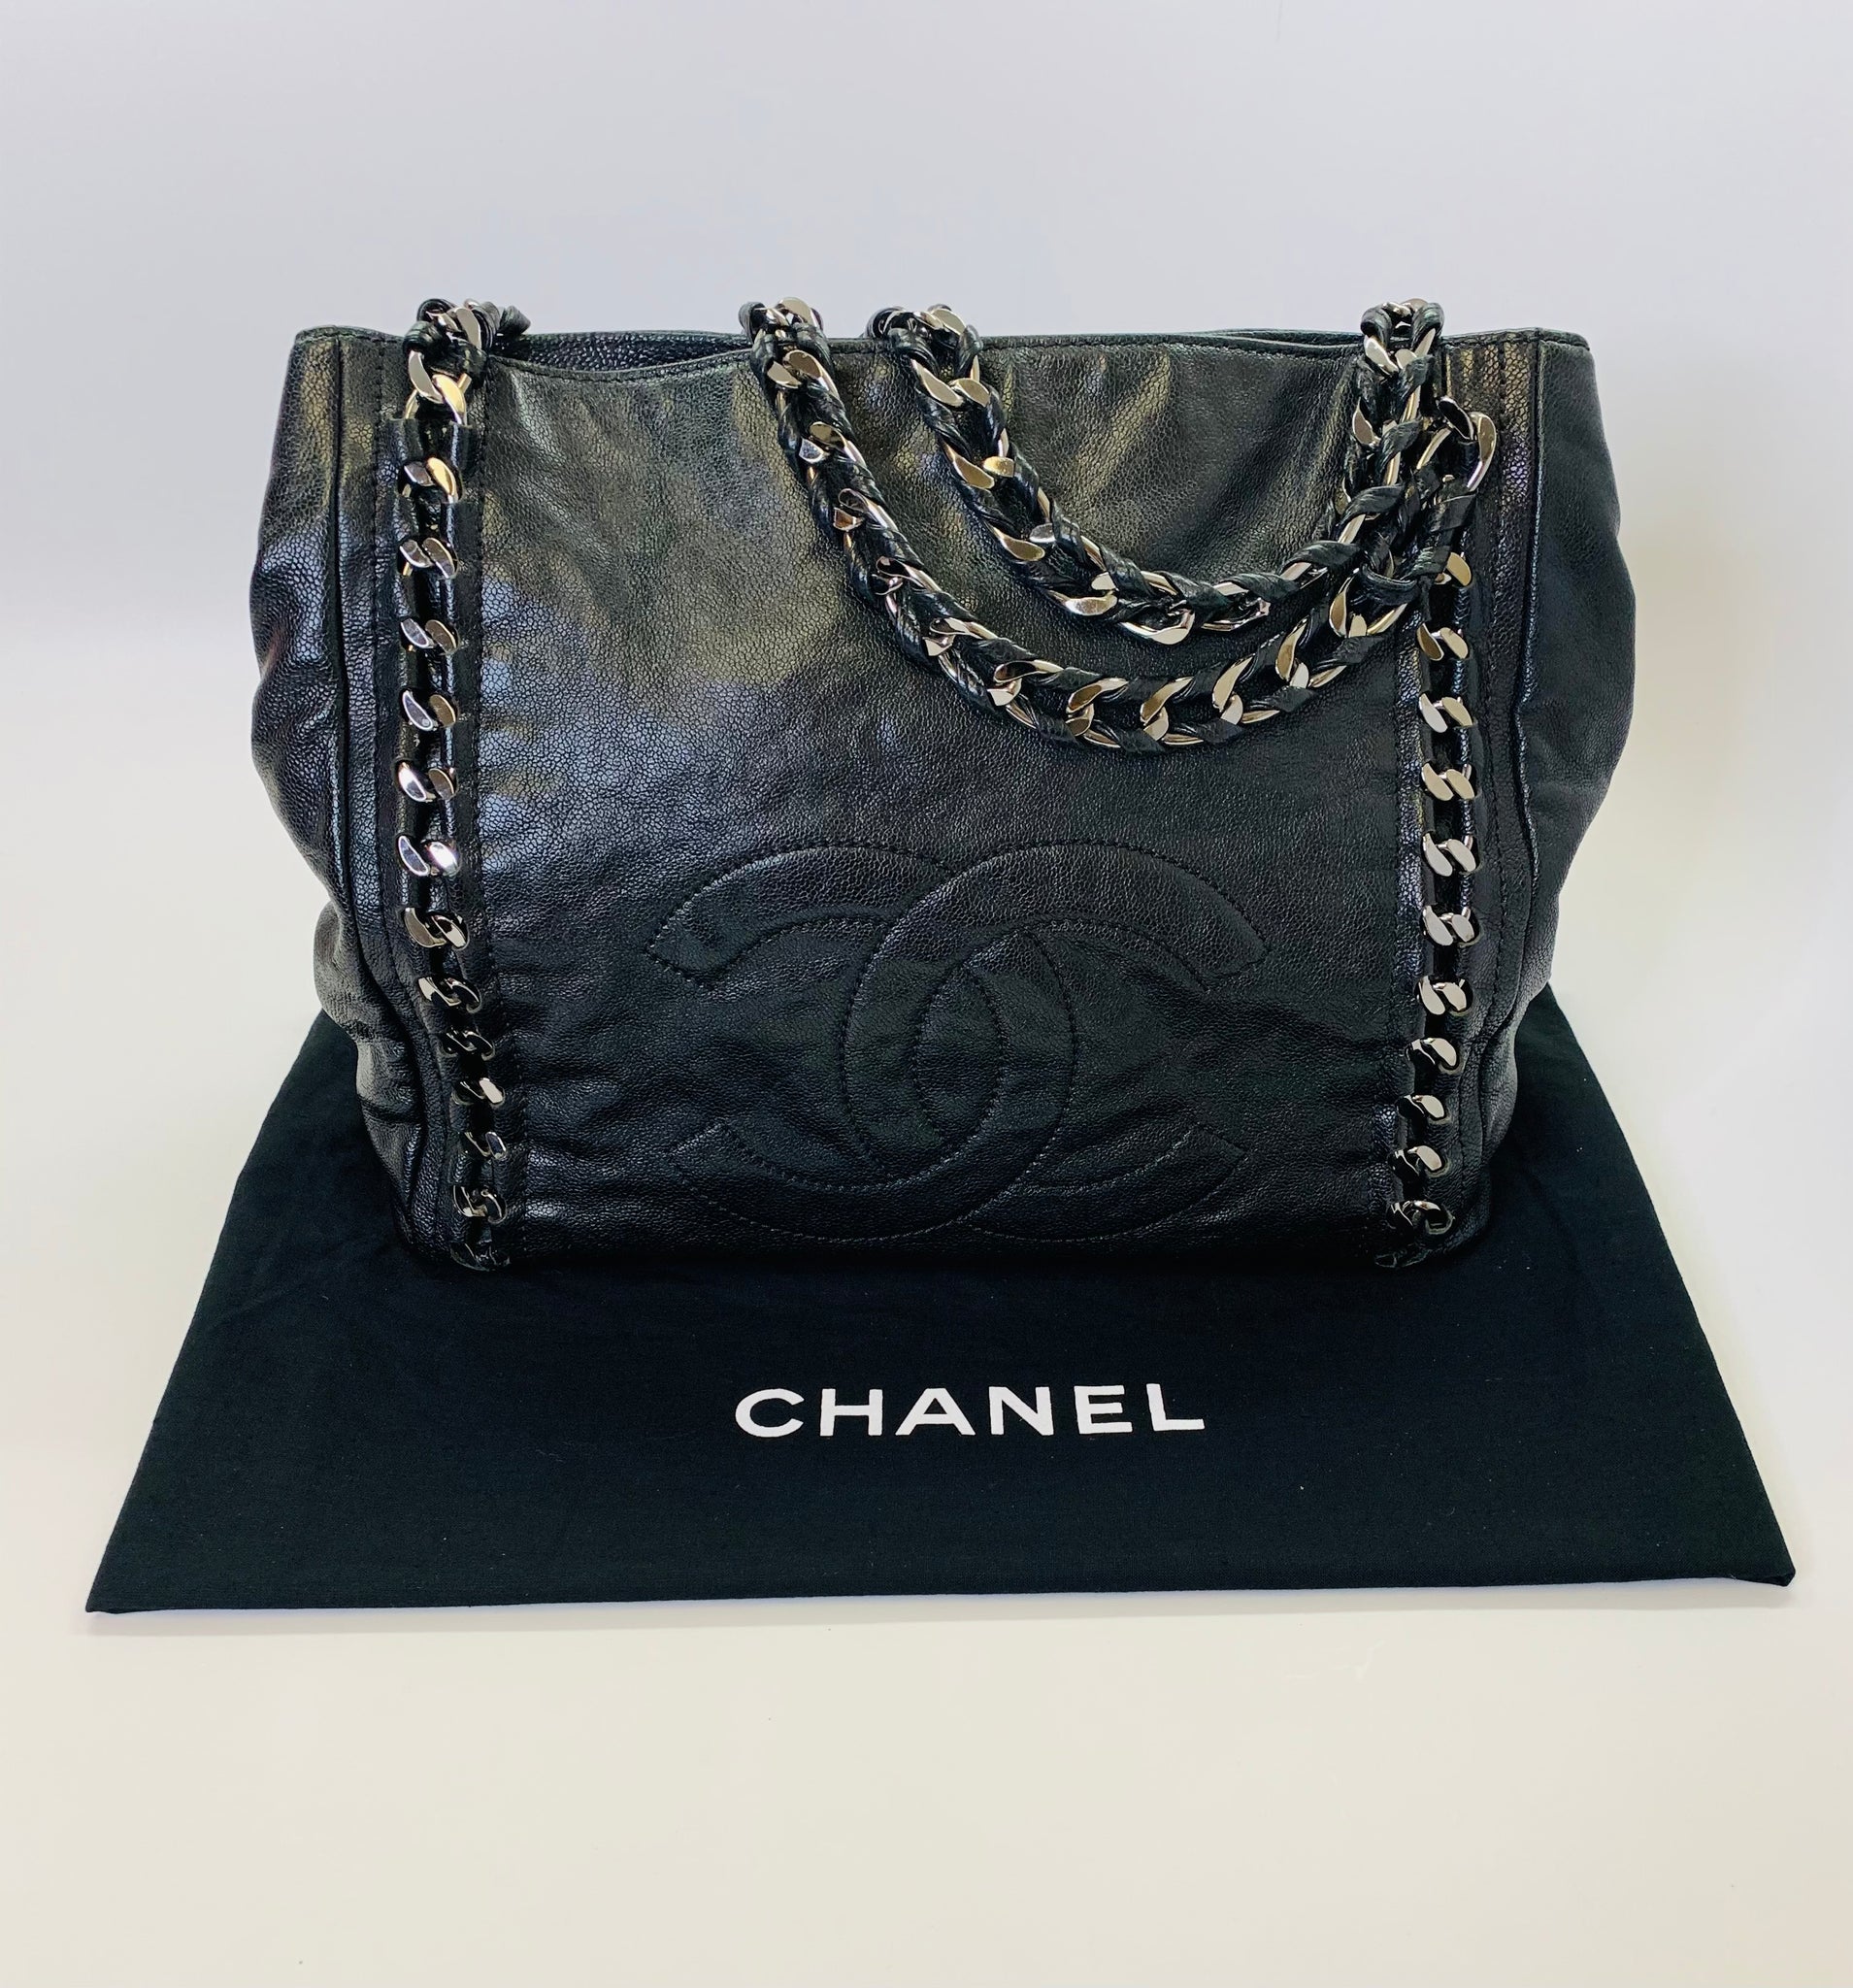 CHANEL-Matelasse-Caviar-Skin-Chain-Tote-Bag-Shoulder-Bag-Black